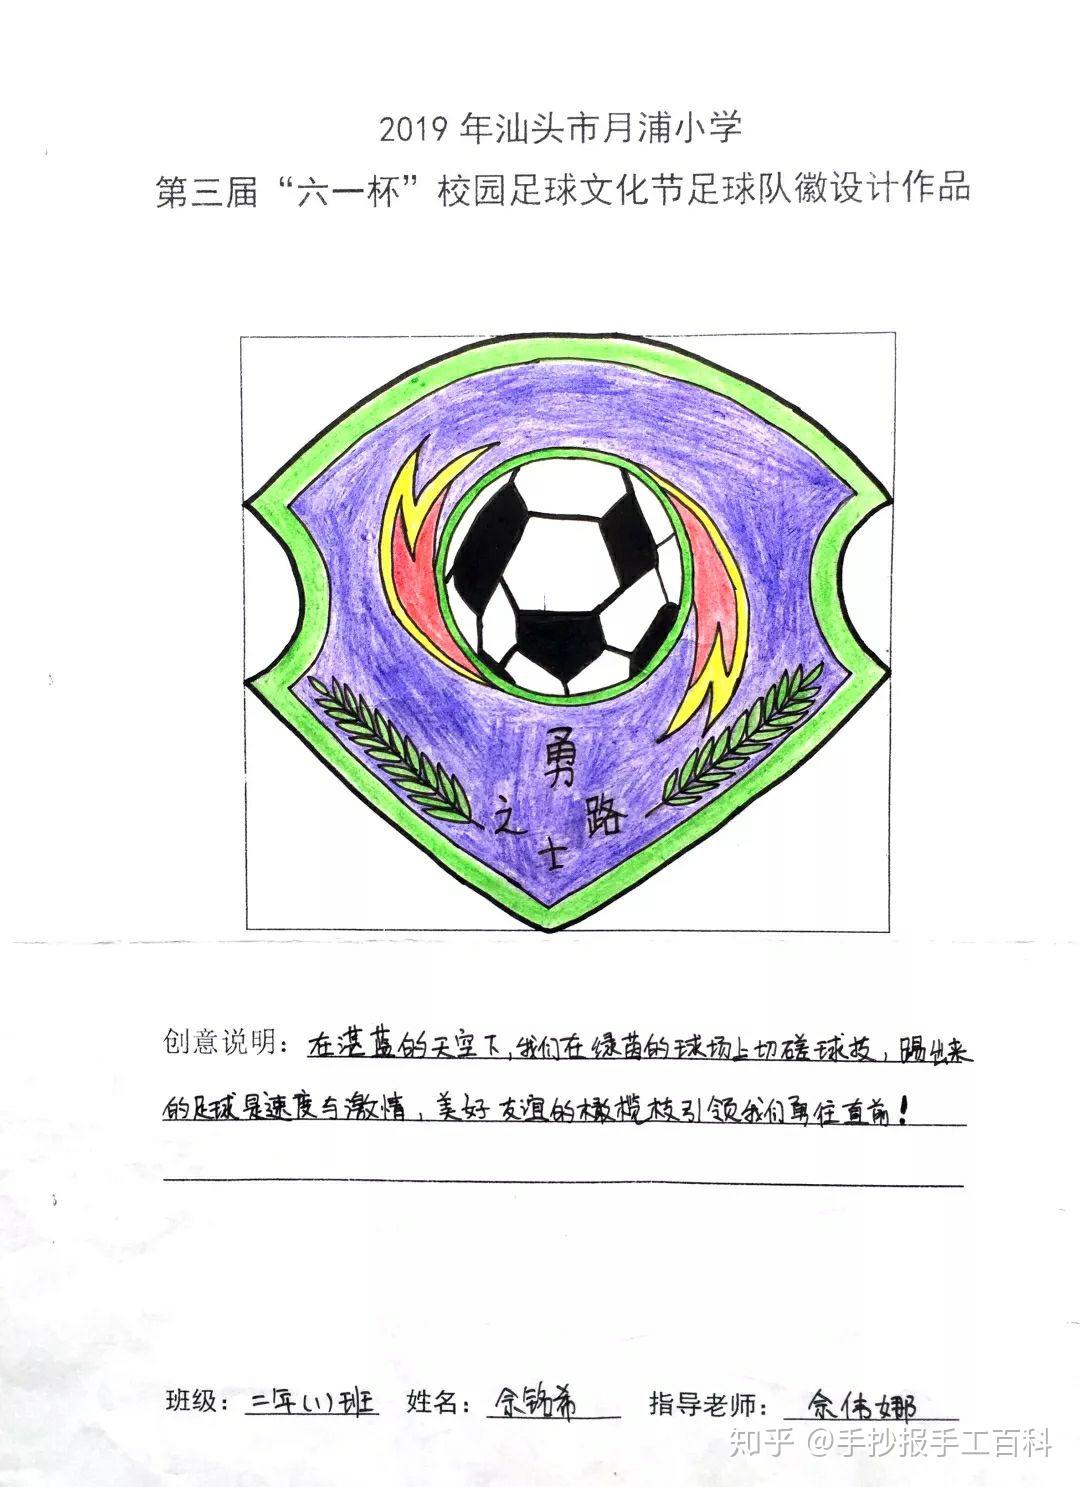 2019年第三届校园足球文化节,足球队队徽设计合集,附带有设计创意说明